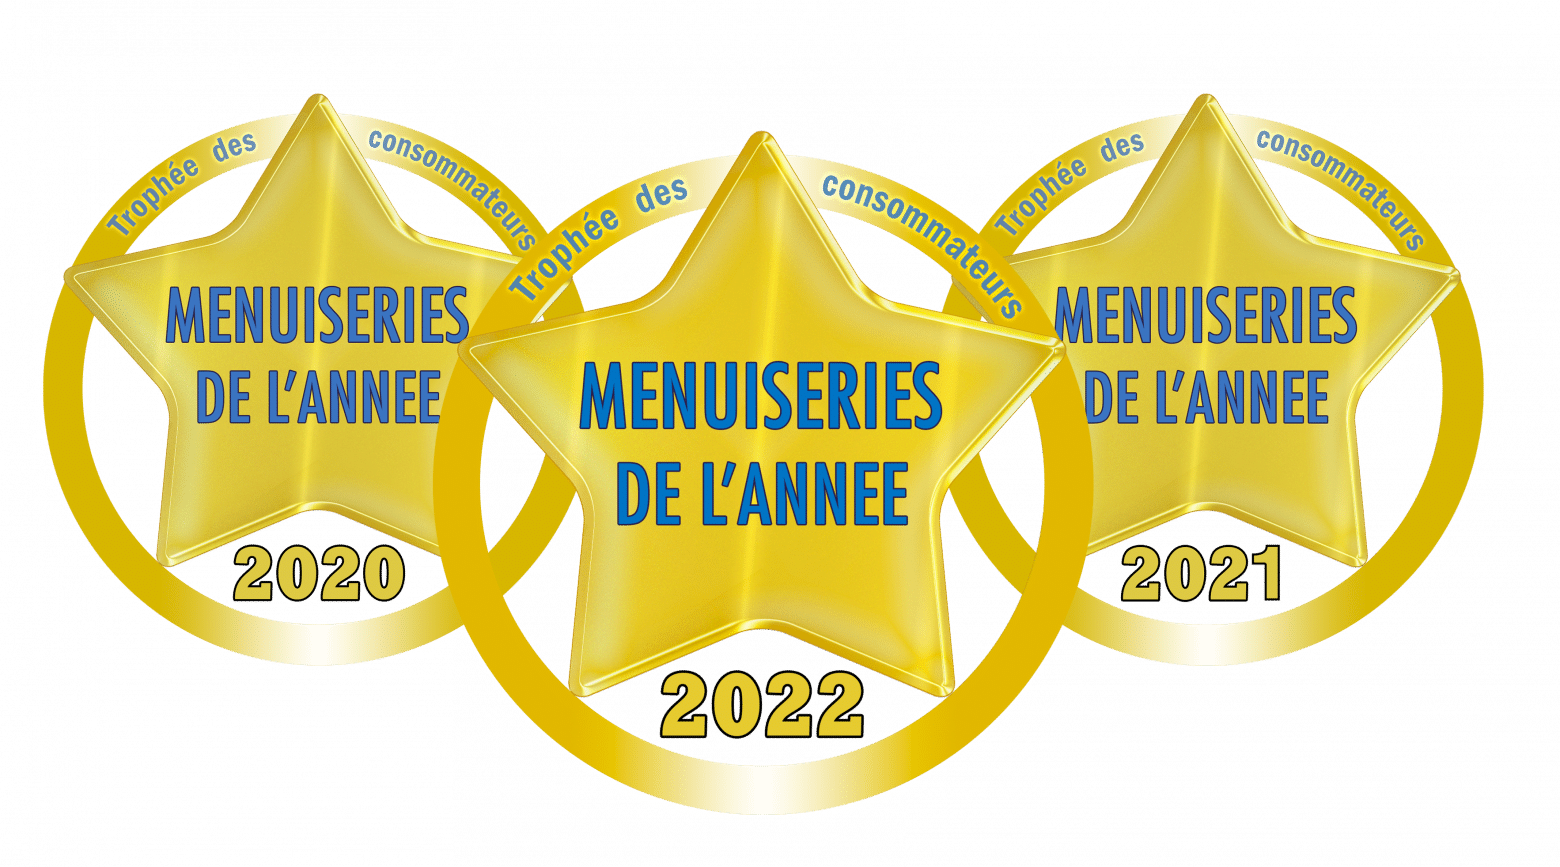 Le Trophée “Menuiseries de l’année” pour la 3ème année consécutive !